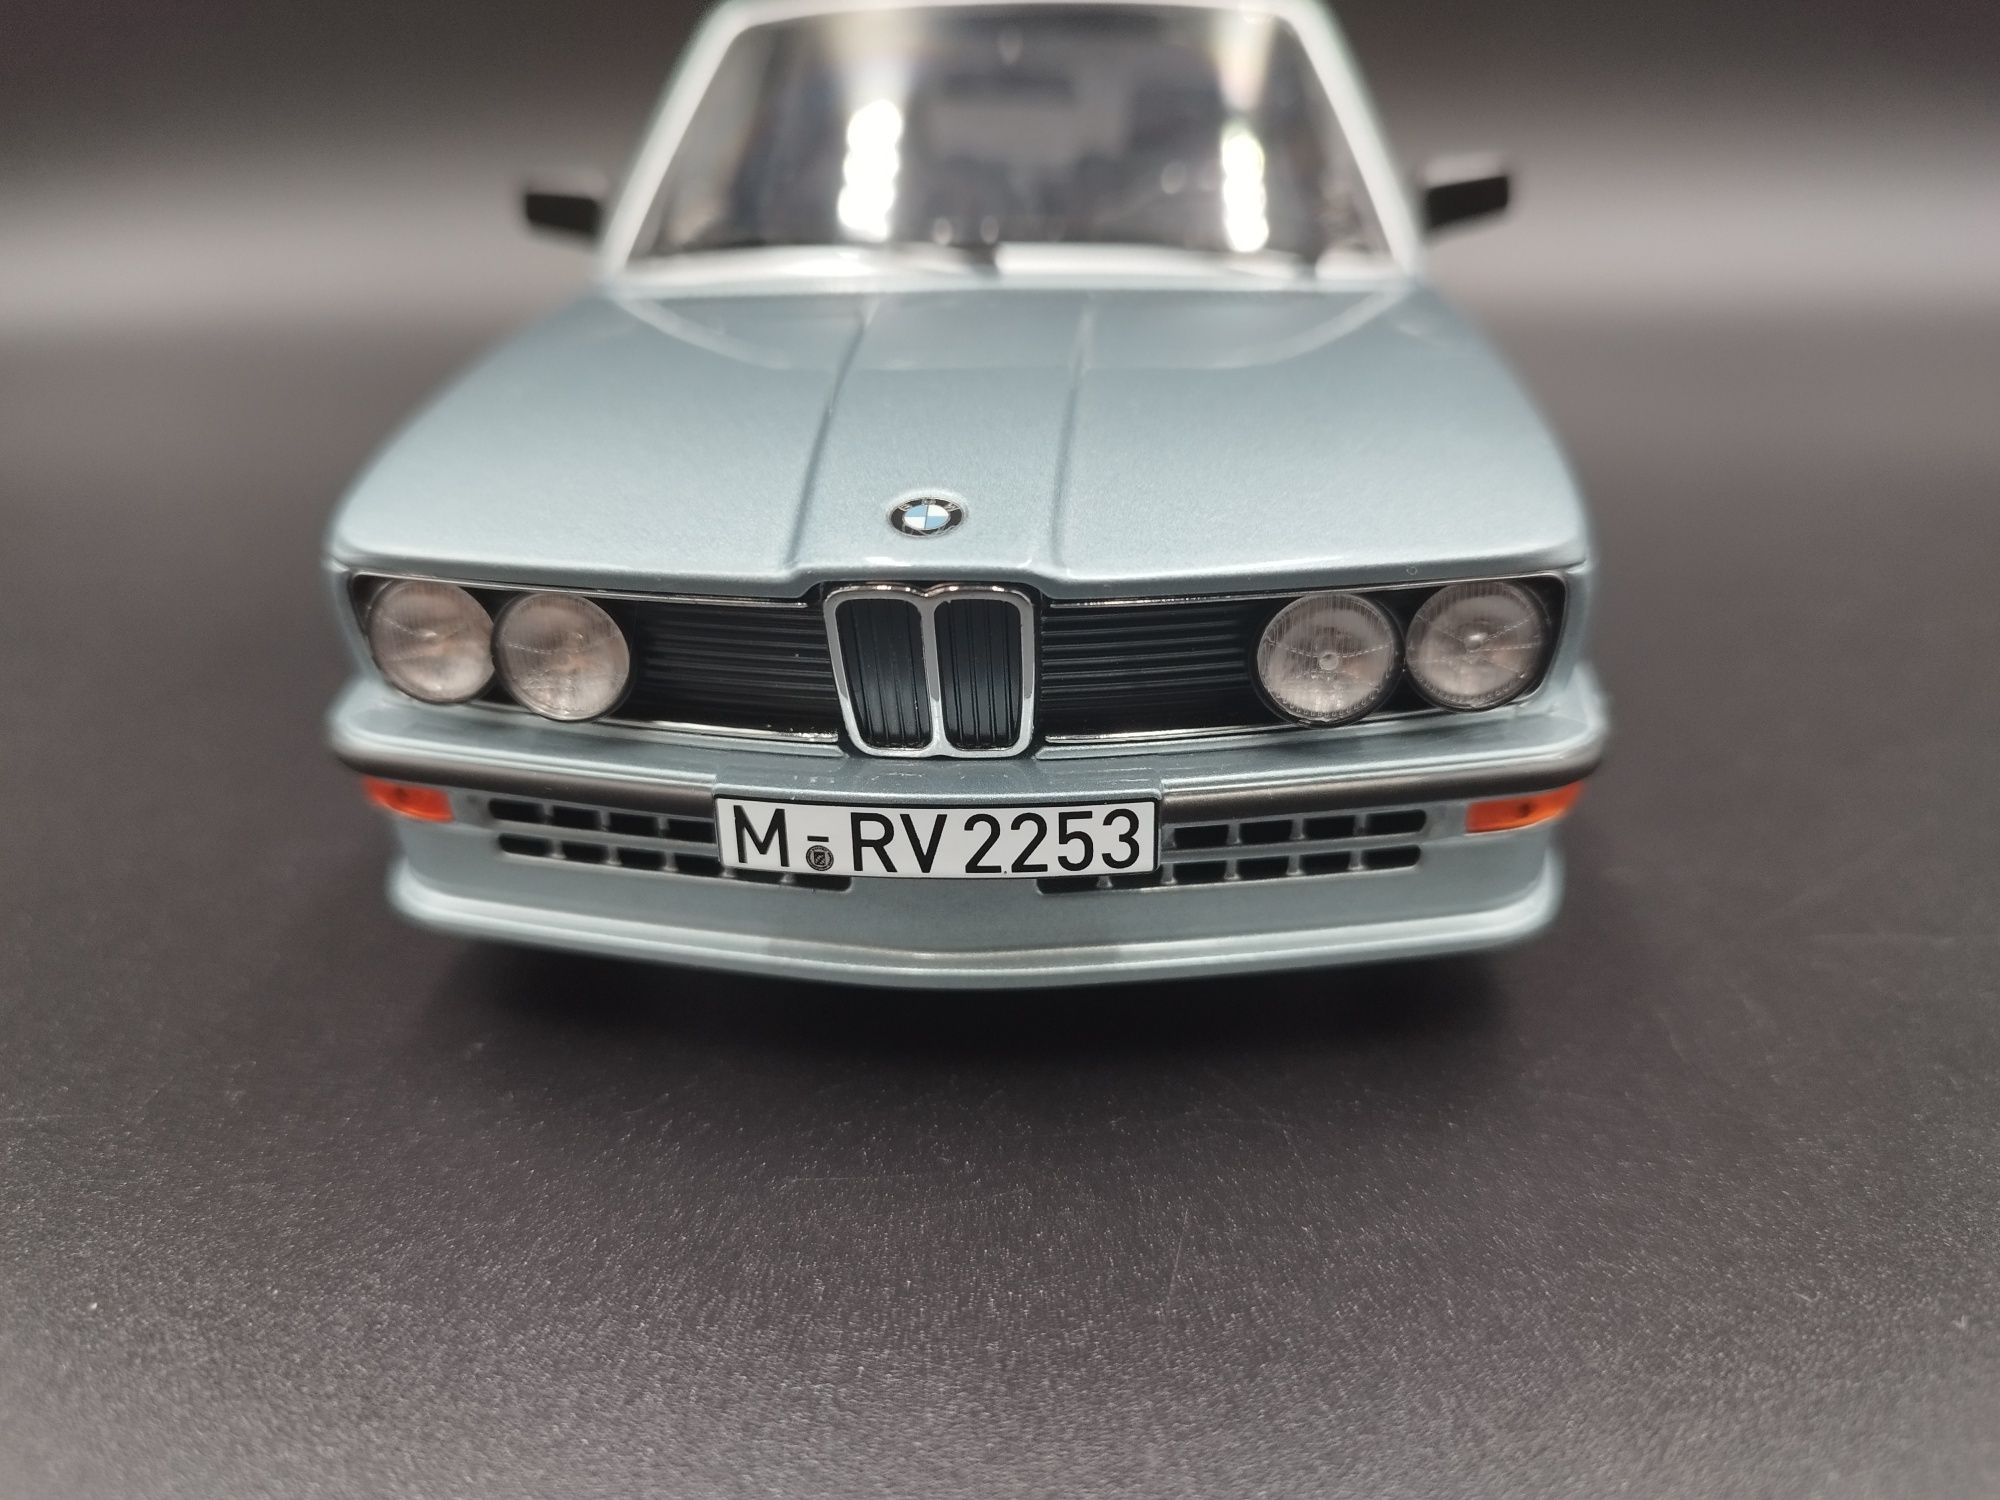 1:18 Norev 1980 BMW M535i E12 –light blue metallic